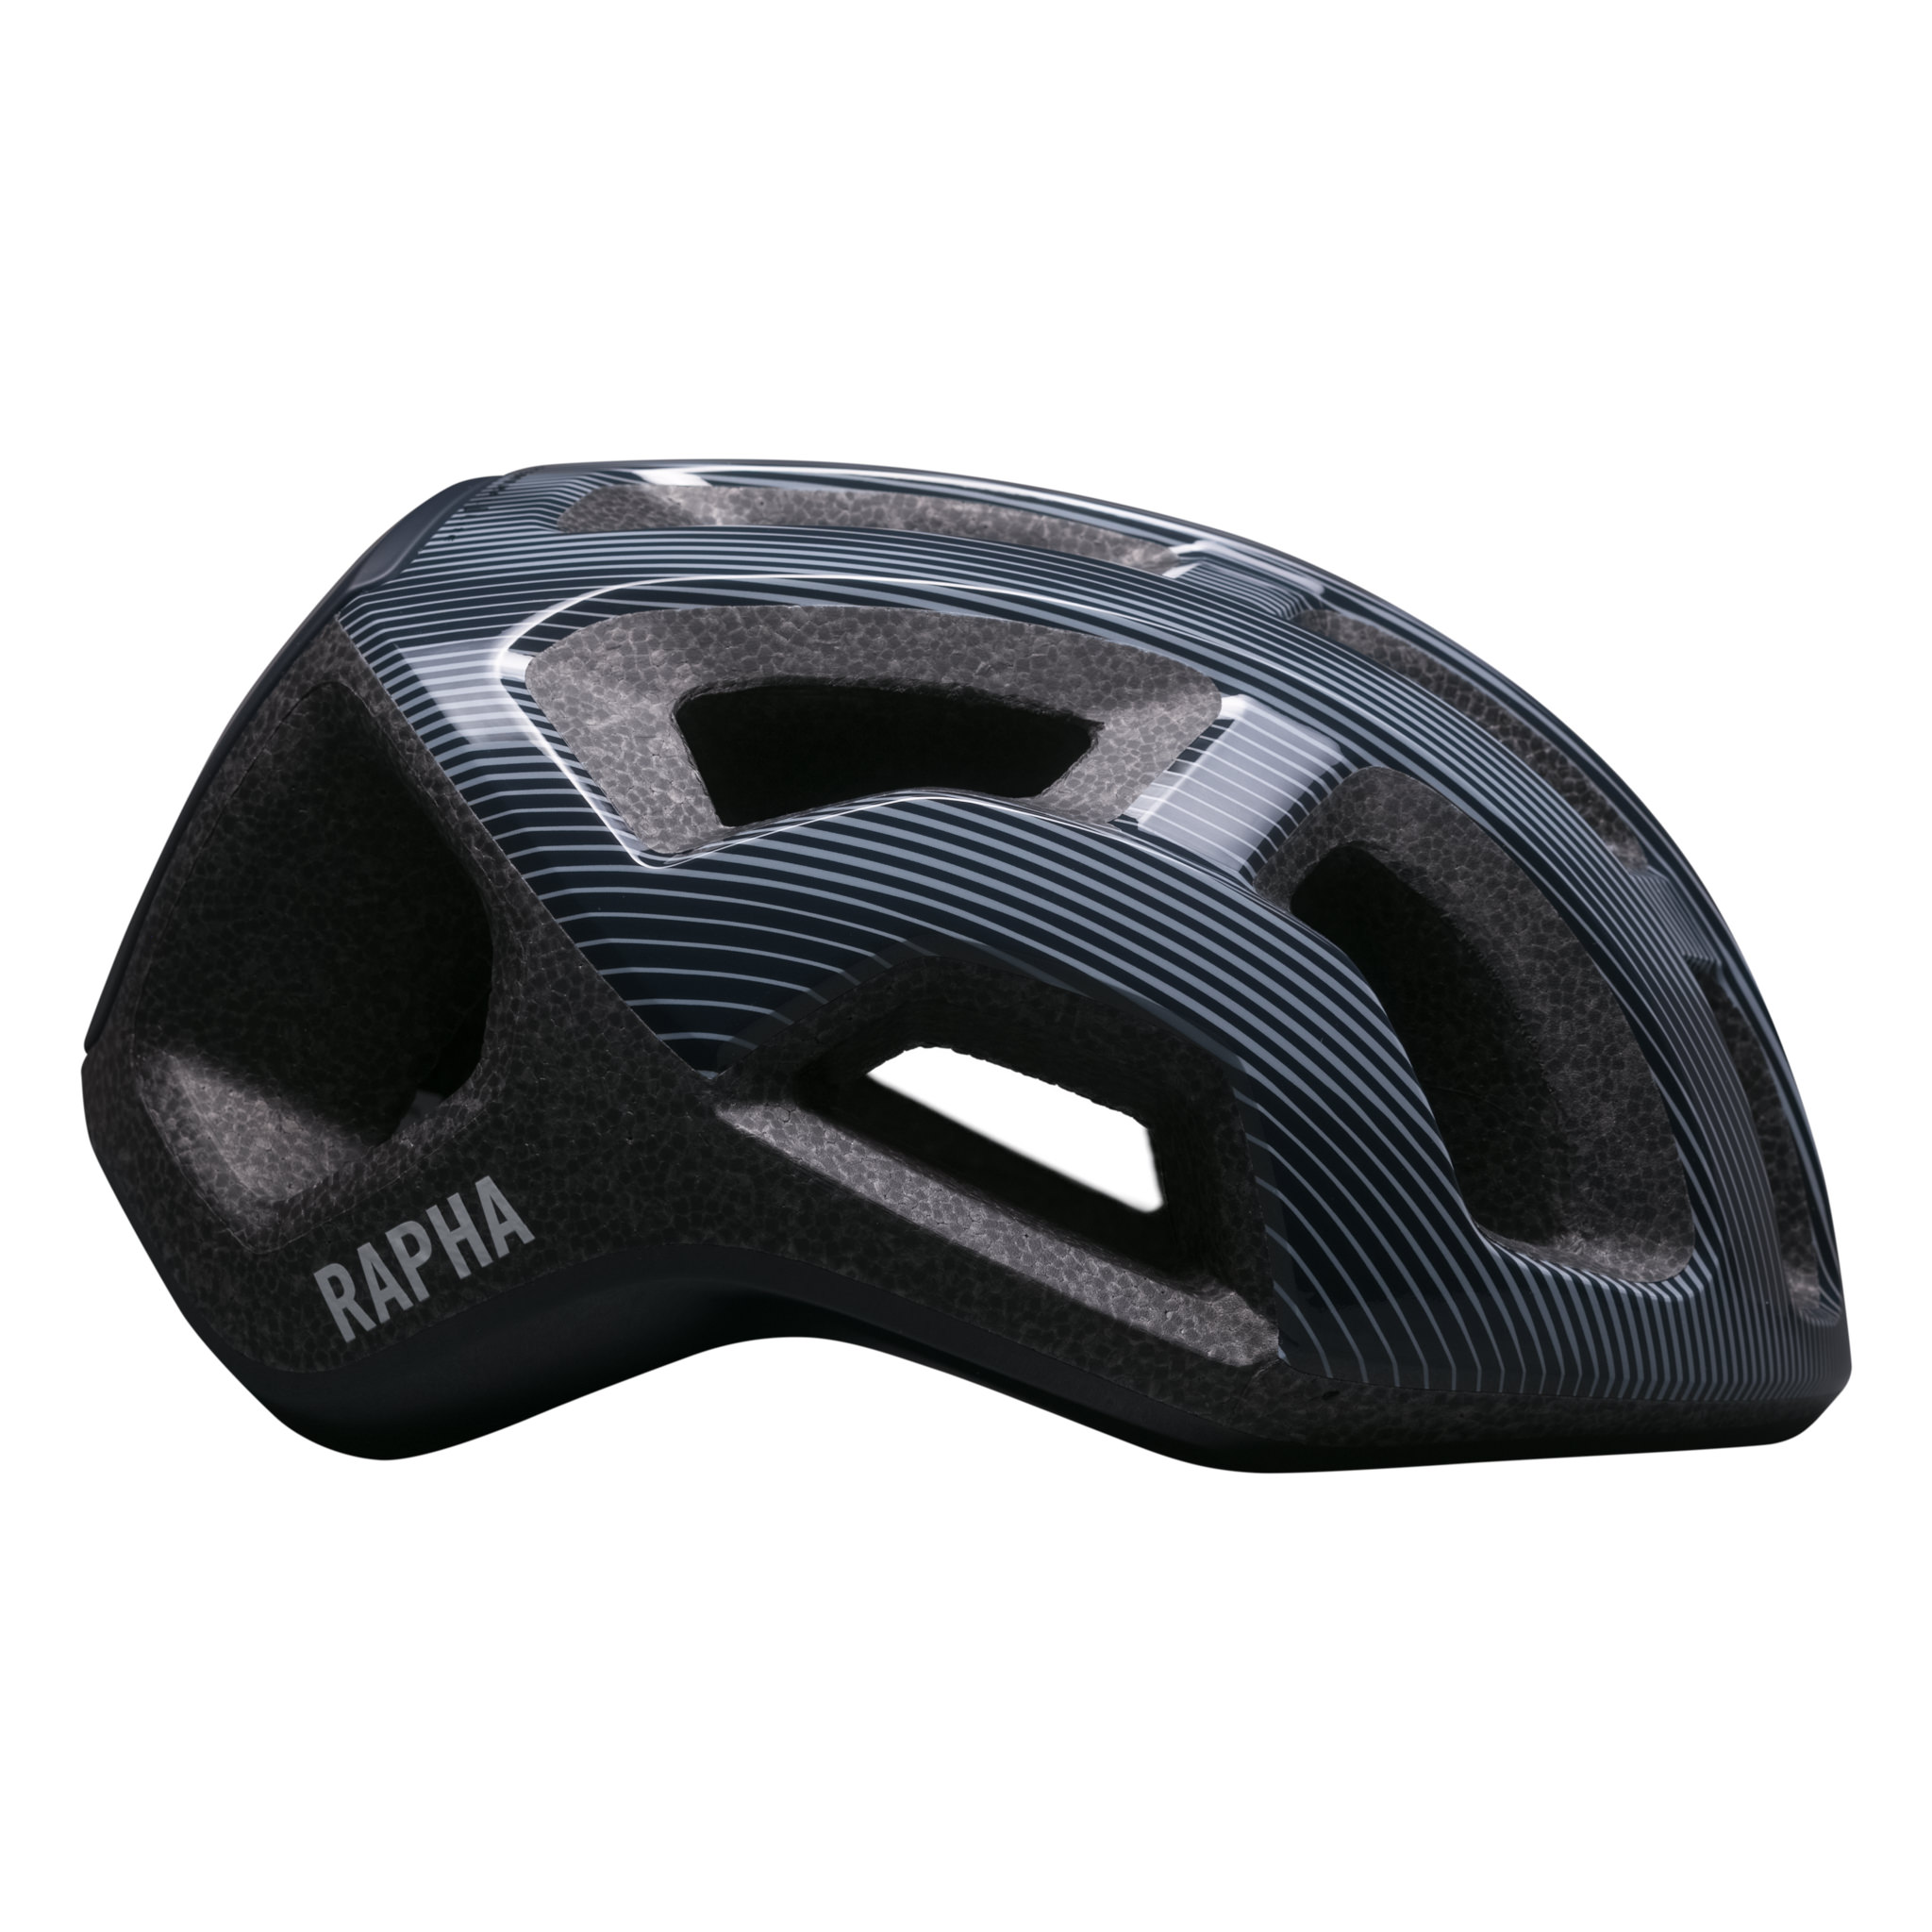 Rapha + POC Ventral Lite Helm Test